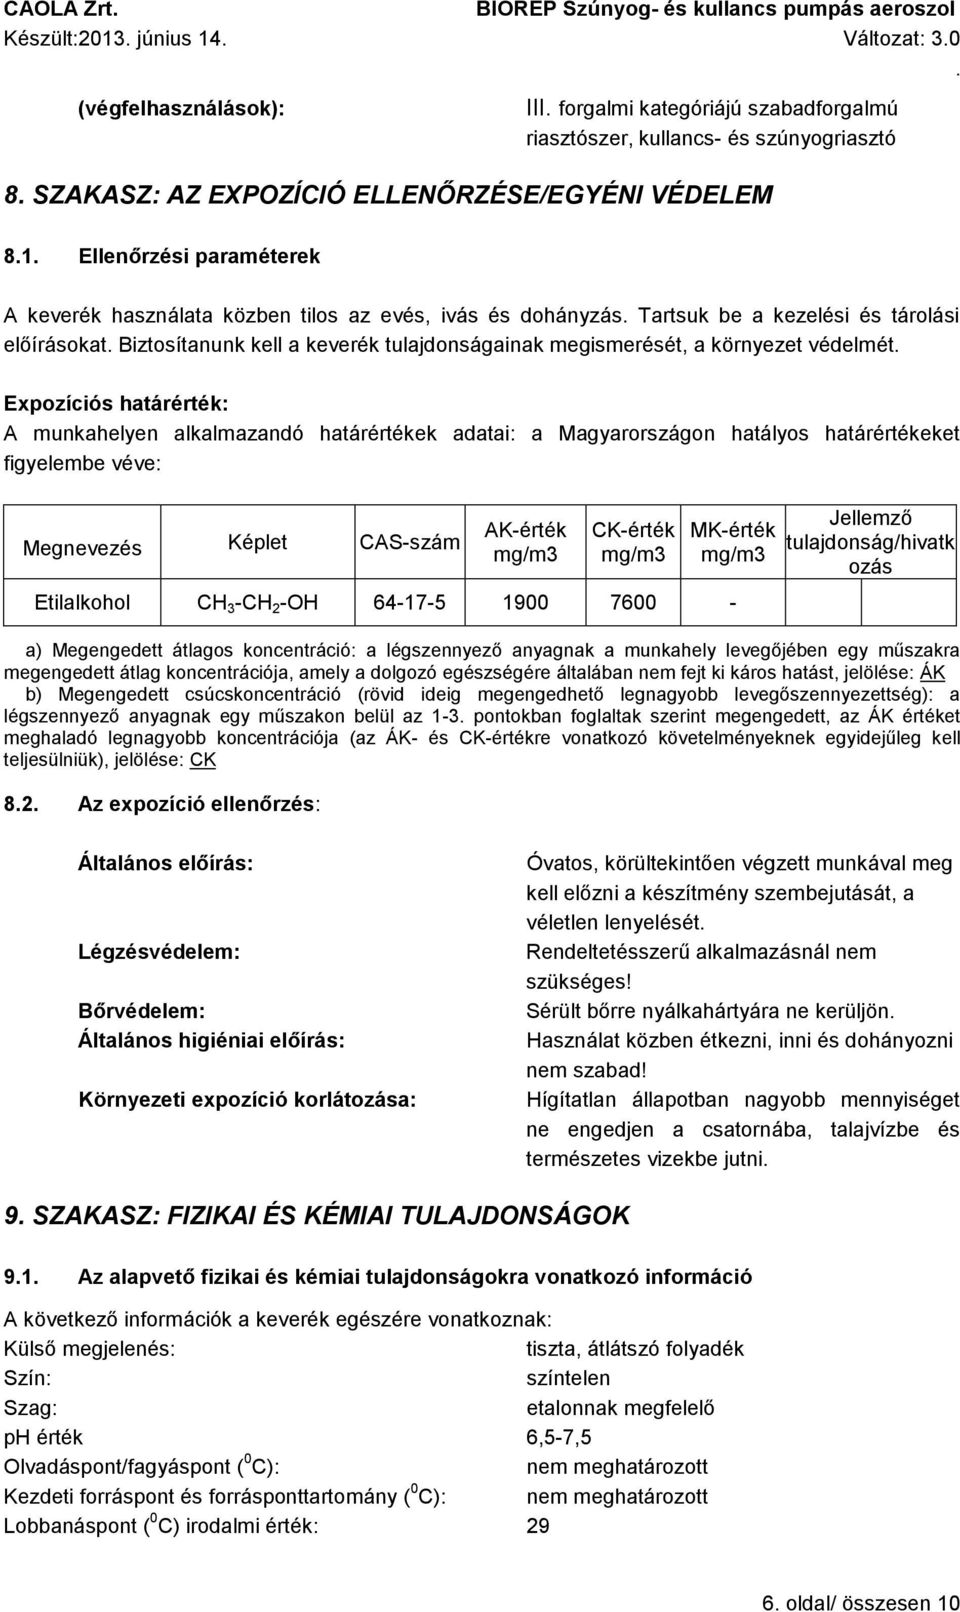 környezet védelmét Expozíciós határérték: A munkahelyen alkalmazandó határértékek adatai: a Magyarországon hatályos határértékeket figyelembe véve: Megnevezés Képlet CAS-szám AK-érték mg/m3 CK-érték